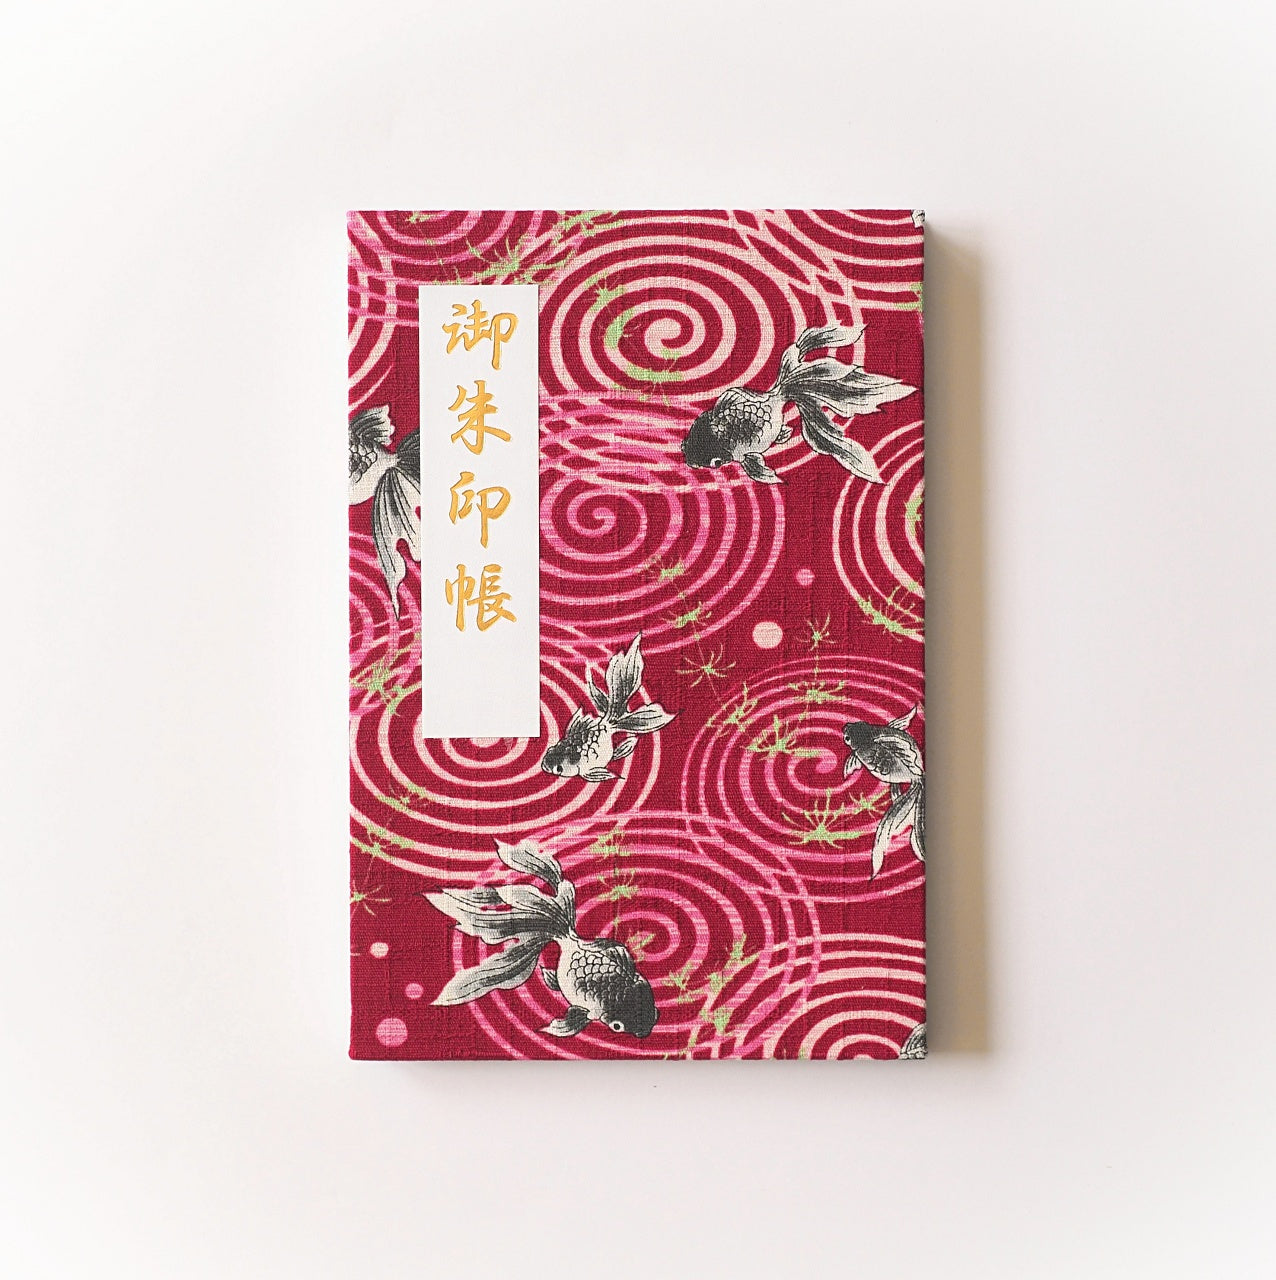 Goshuin book “Yu” Cool Goldfish/Akane